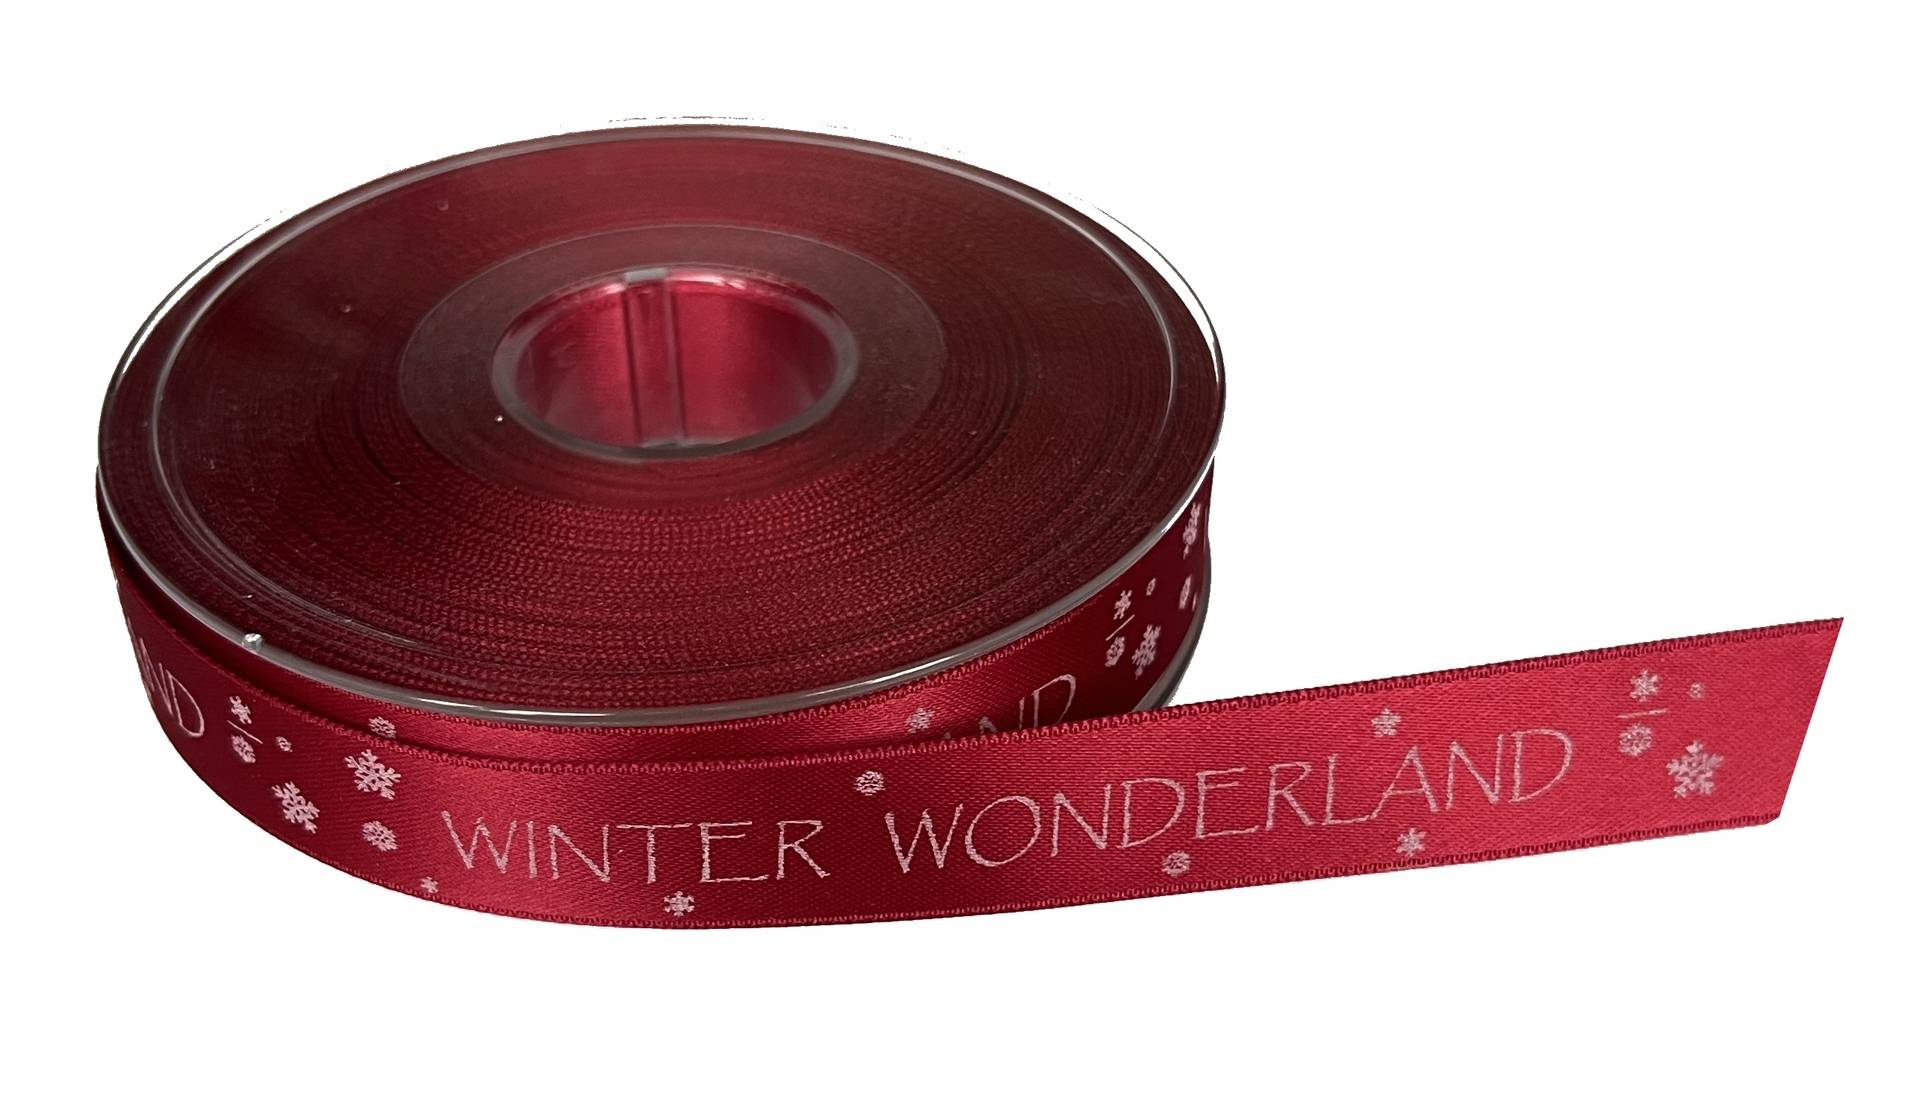 Schleifenband "Winter Wonderland" von Confiserie Burg Lauenstein GmbH